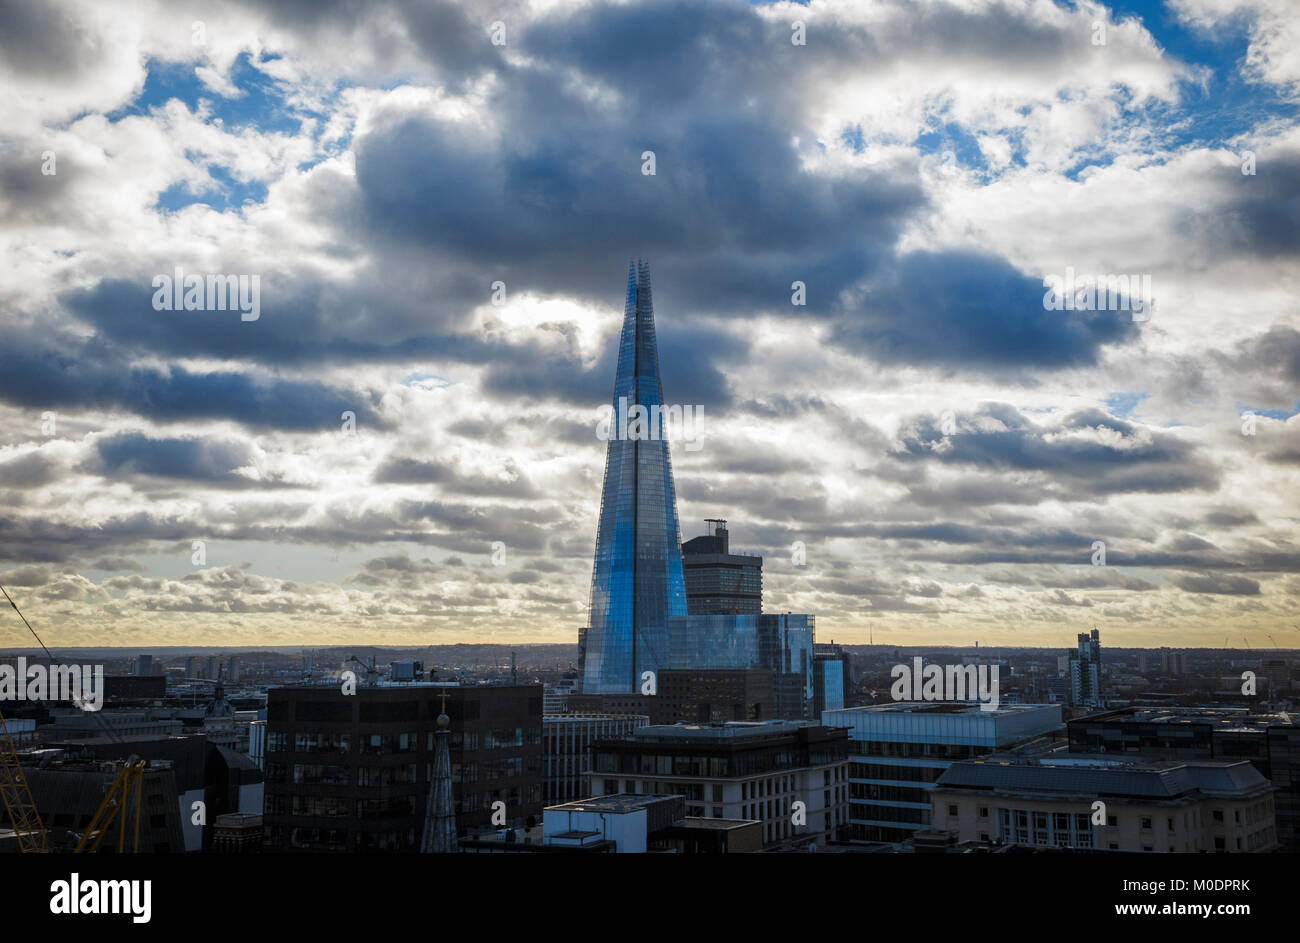 Gewerbliche Immobilien und Immobilien Skyline: Dachterrasse mit Blick auf den Shard, London's höchste Gebäude, mit Sammeln von dunklen Gewitterwolken, London SE1 UK Stockfoto